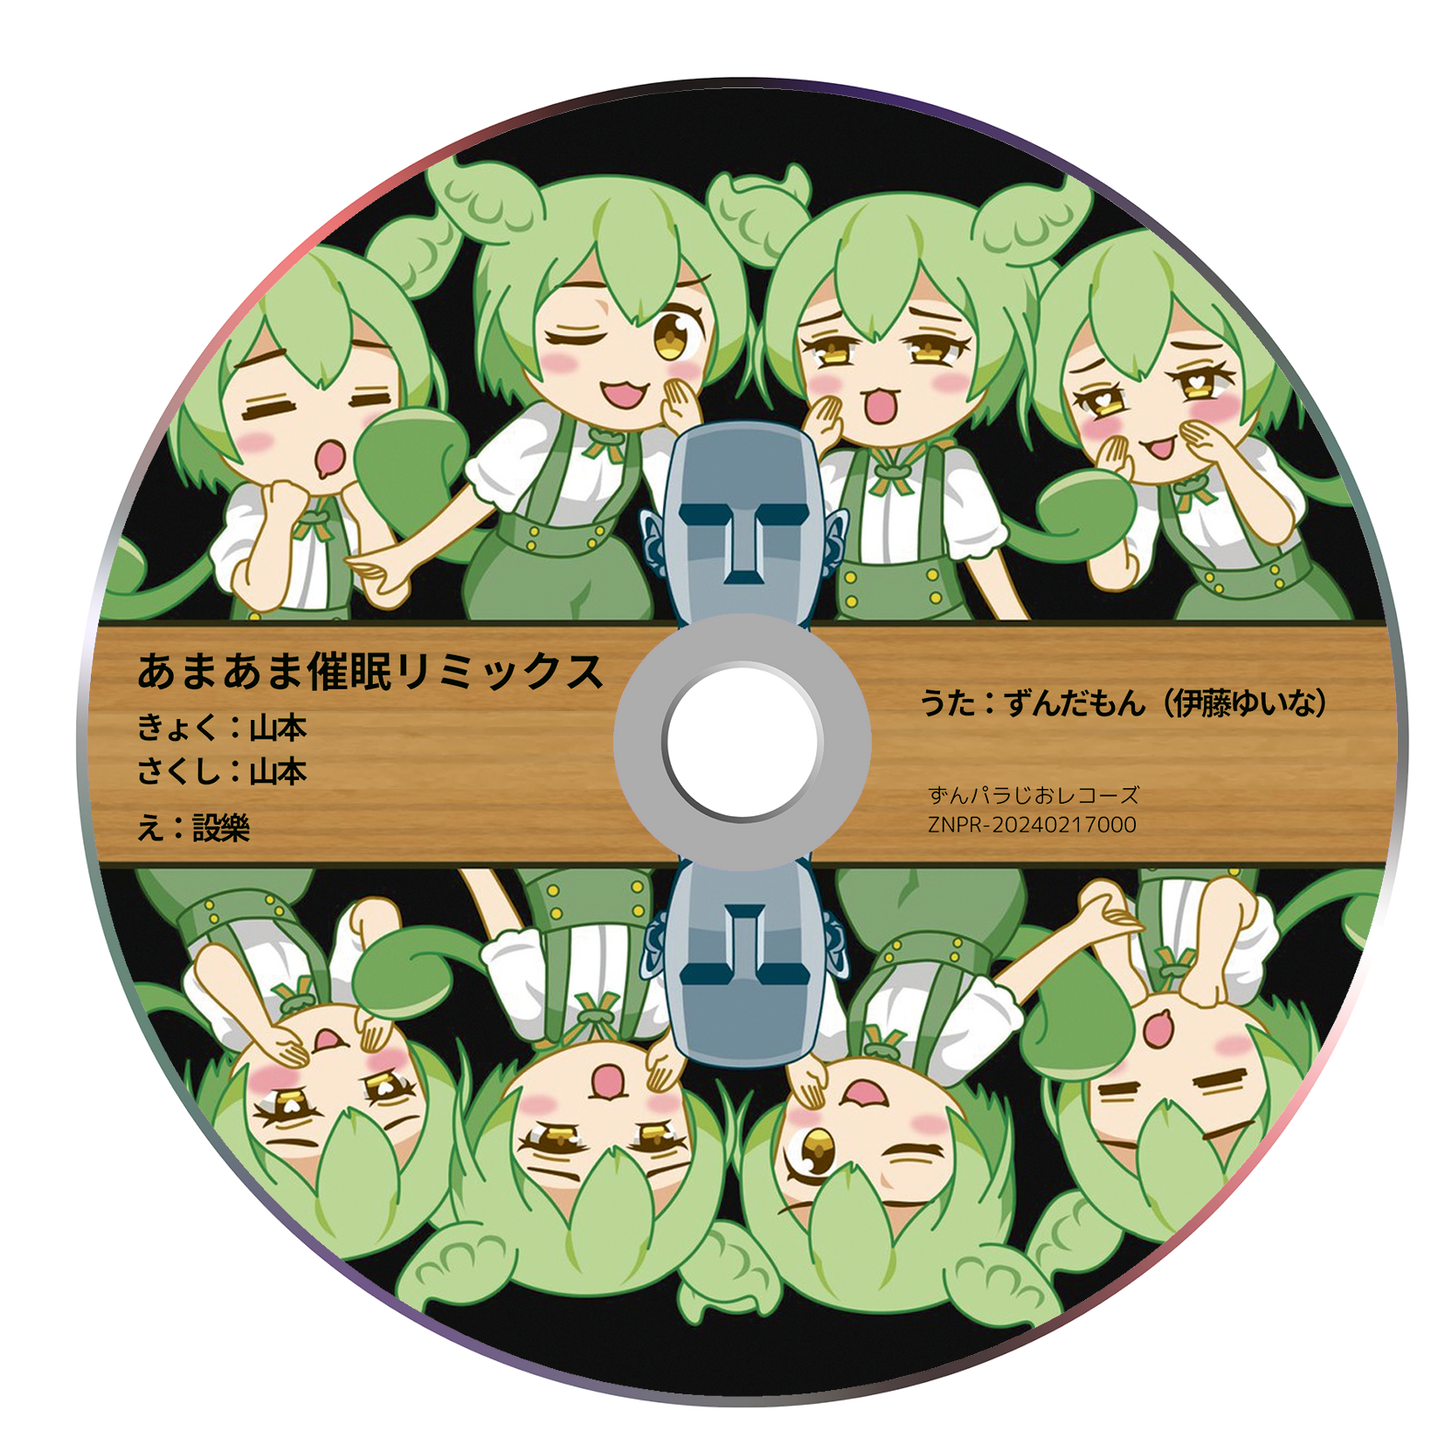 CD あまあま催眠リミックス feat ずんだもん（伊藤ゆいな）歌唱バージョン シングルCD-R